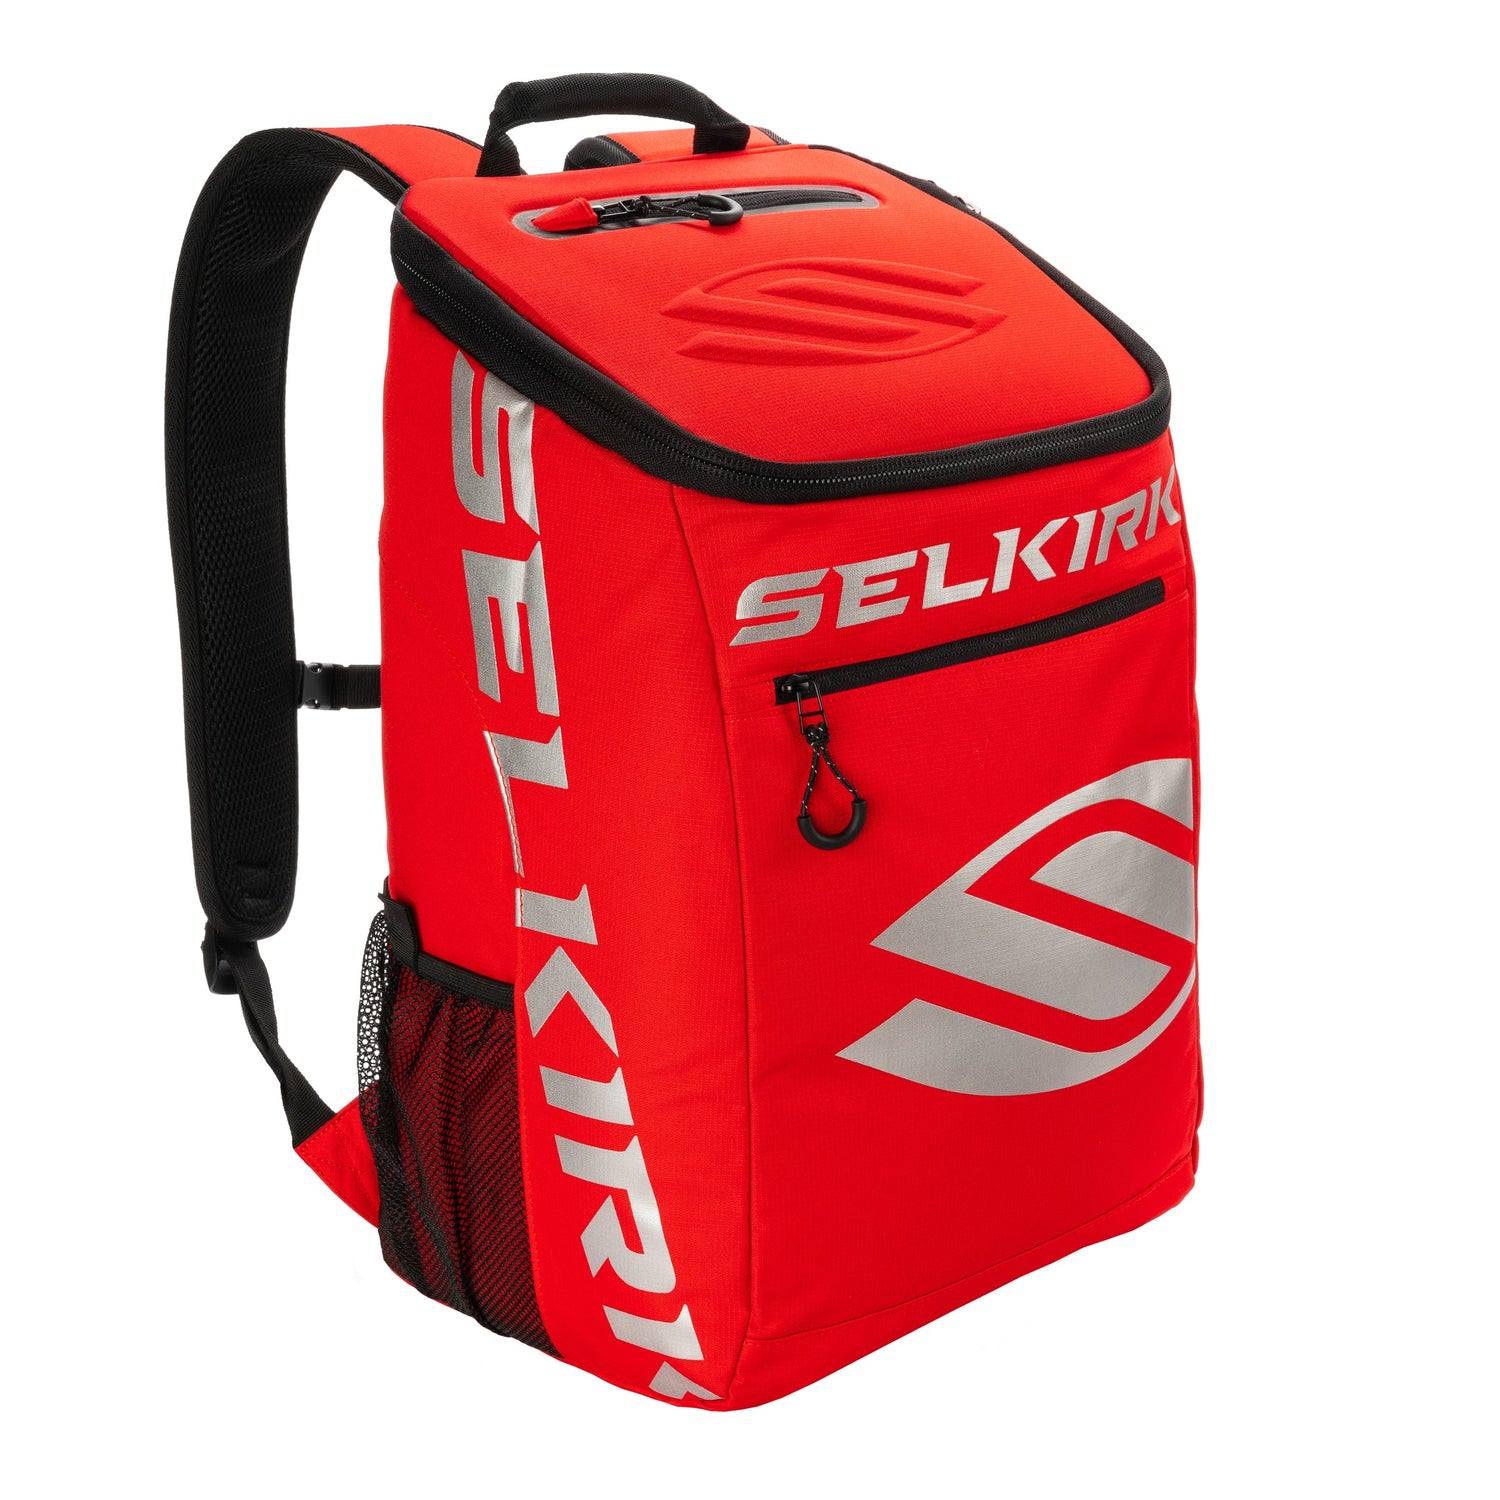 Selkirk Core Team Pickleball Backpack red